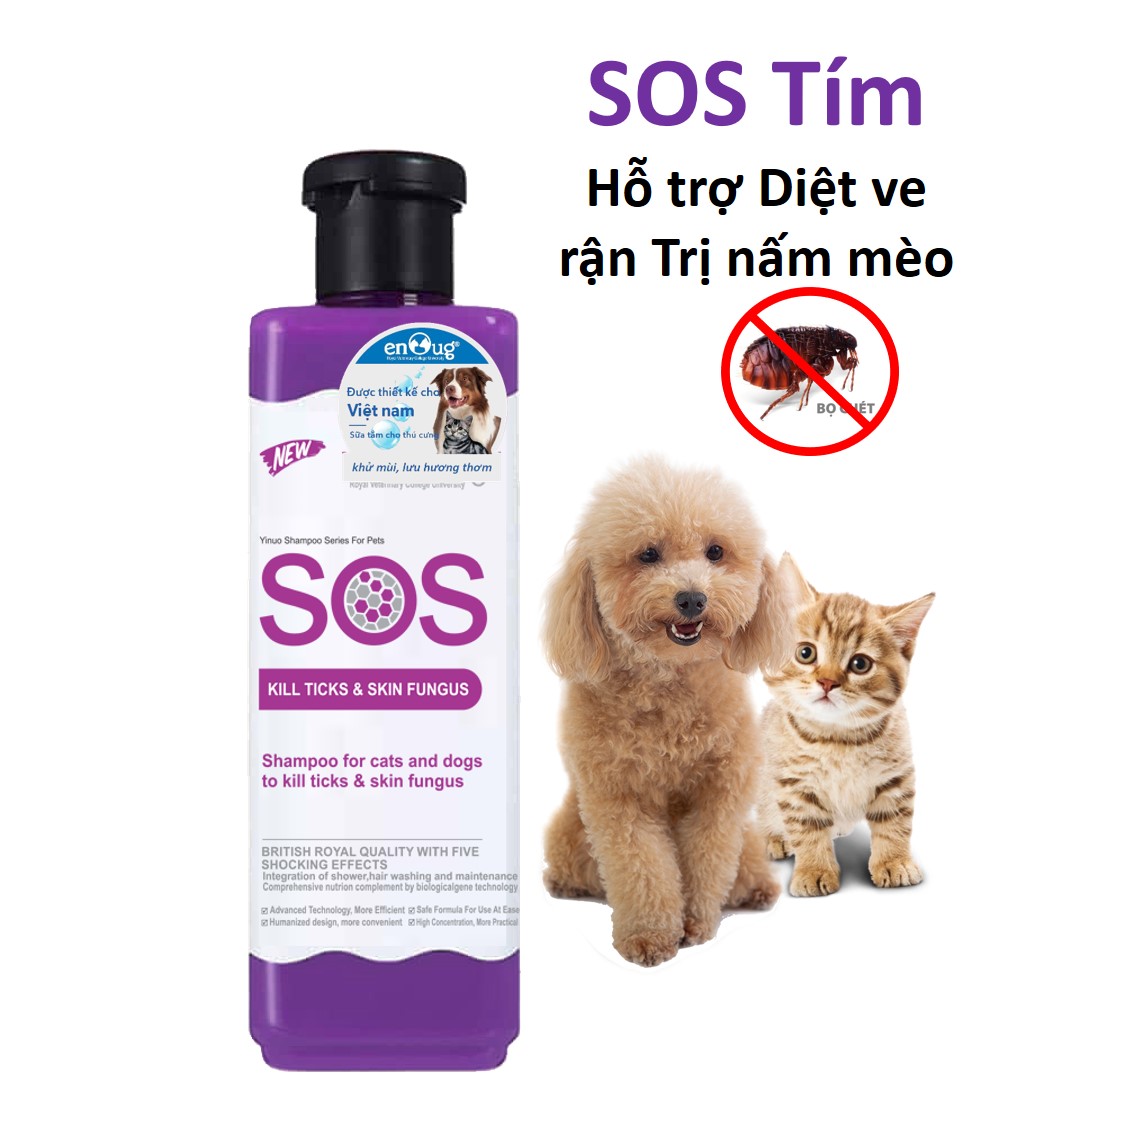 Sữa tắm SOS cho chó mèo